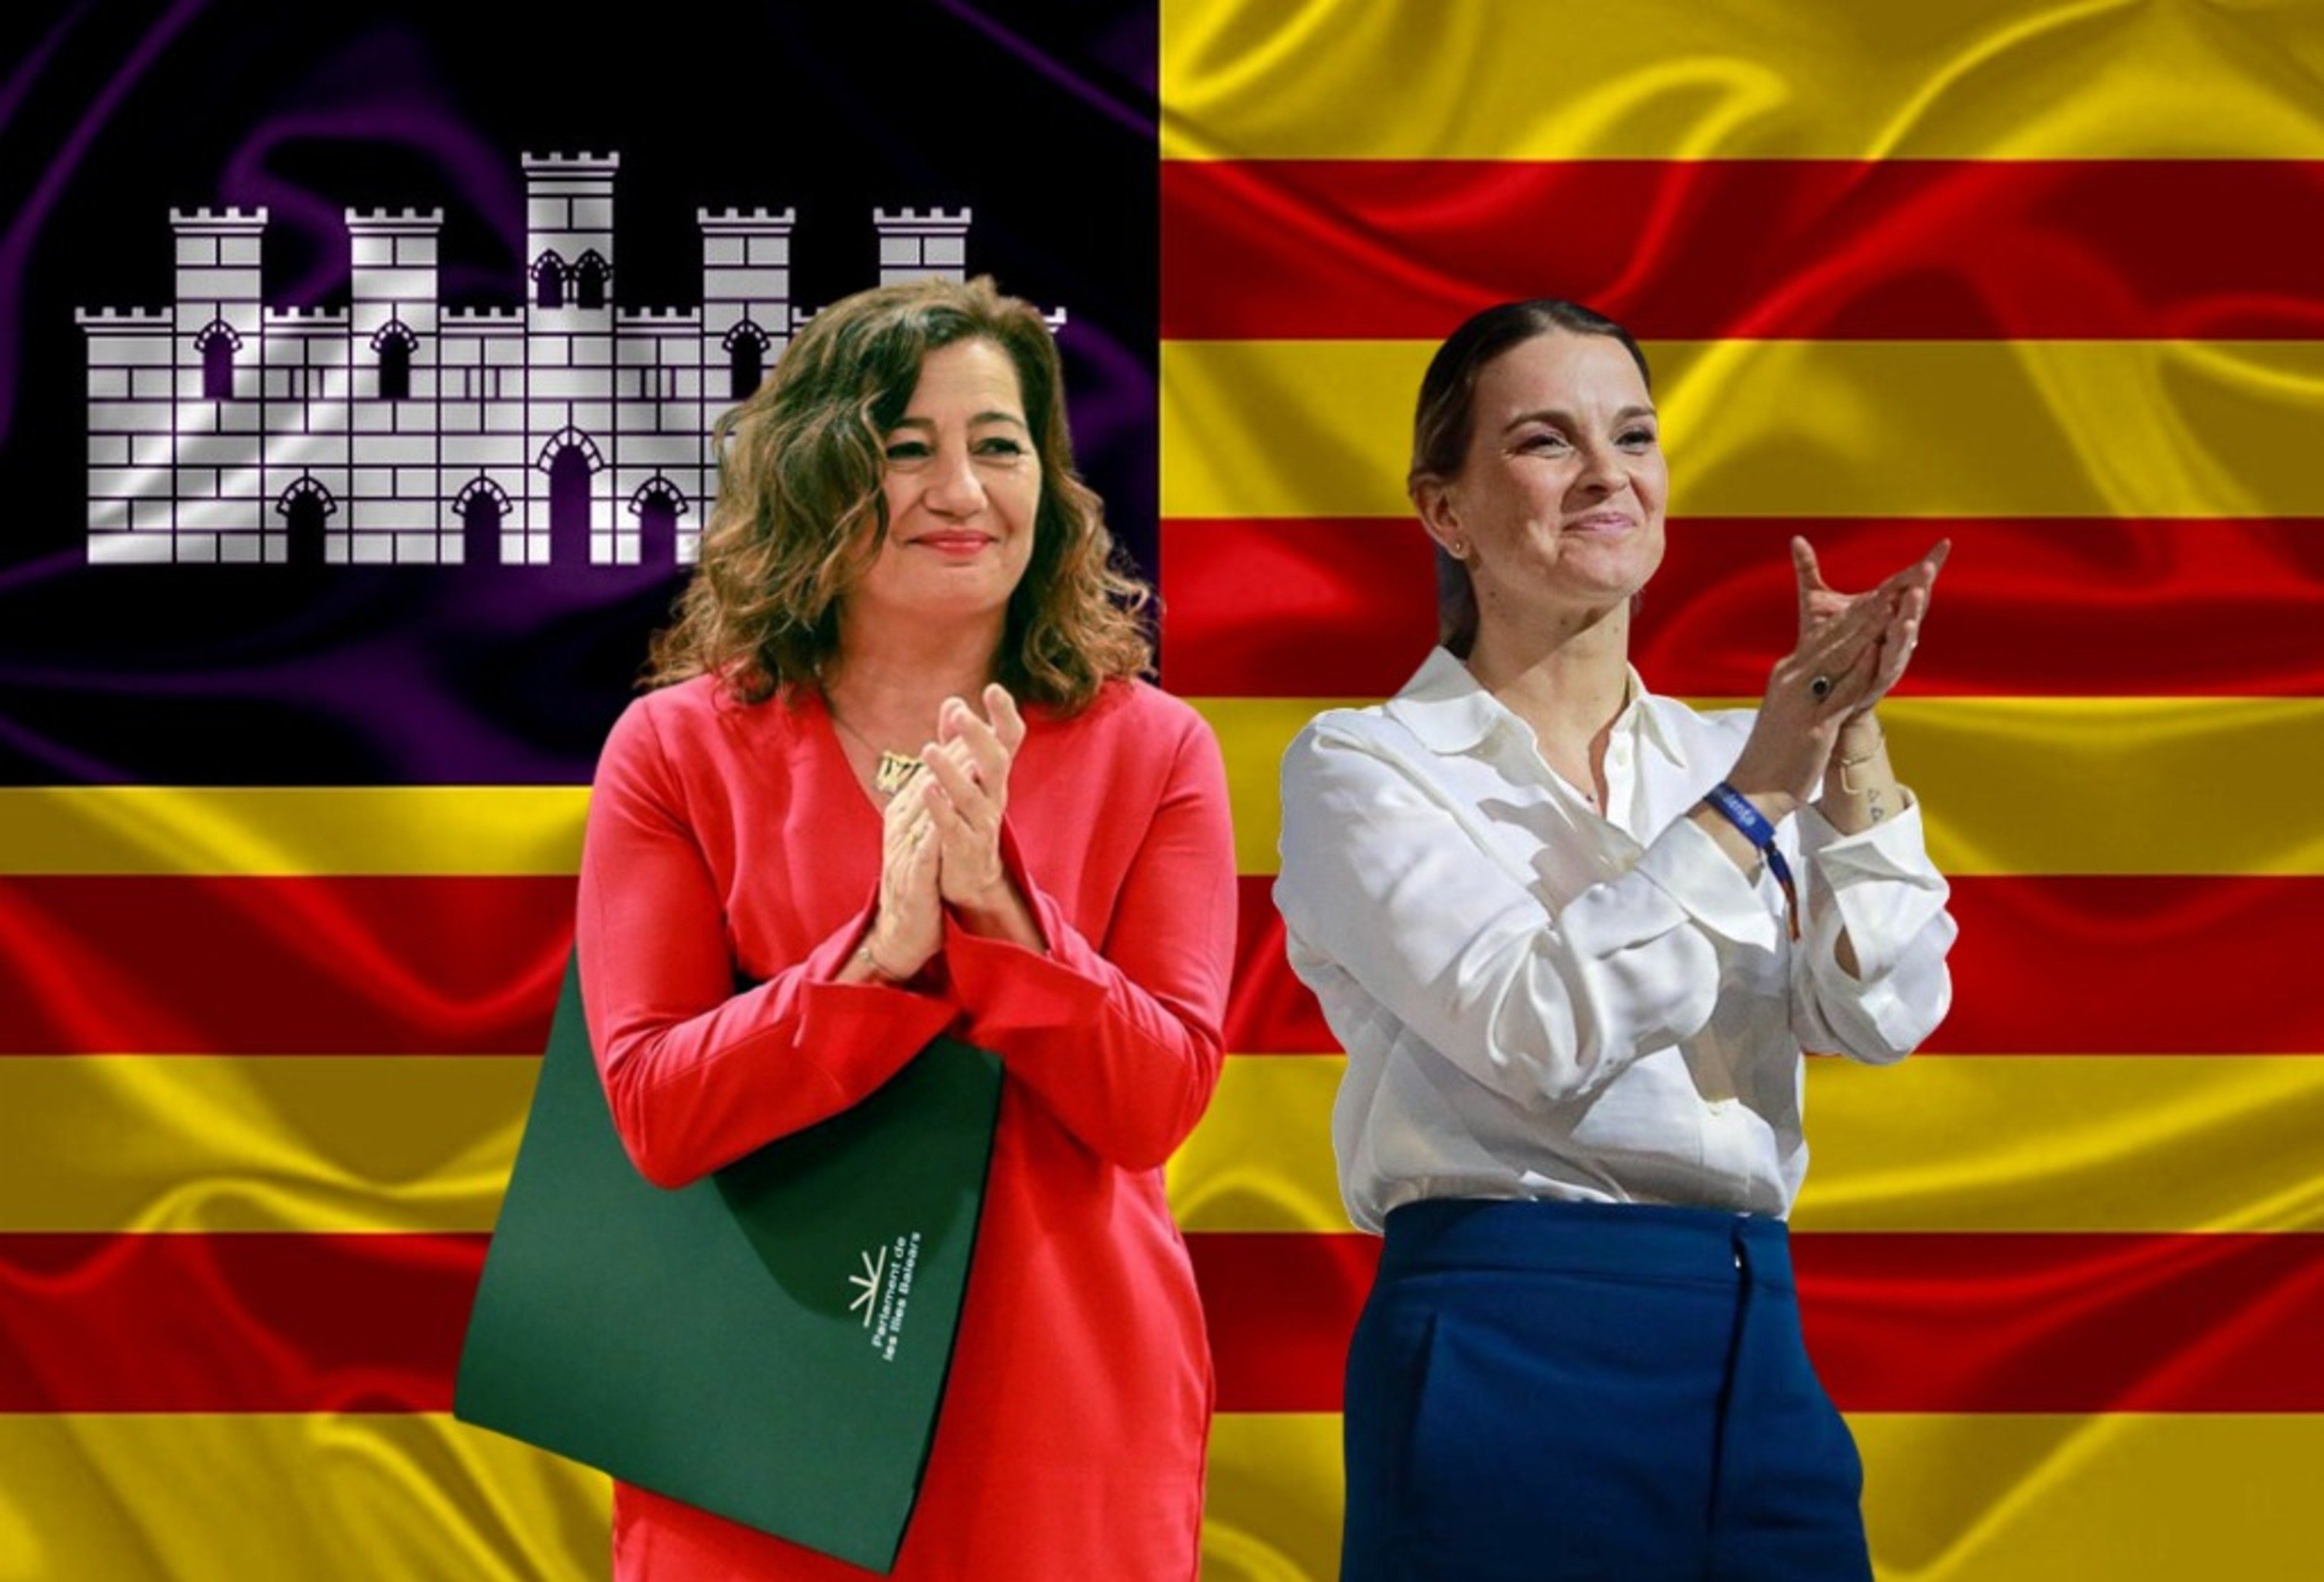 Les Illes Balears es debaten entre un tercer pacte d'esquerres i la coalició de PP i Vox